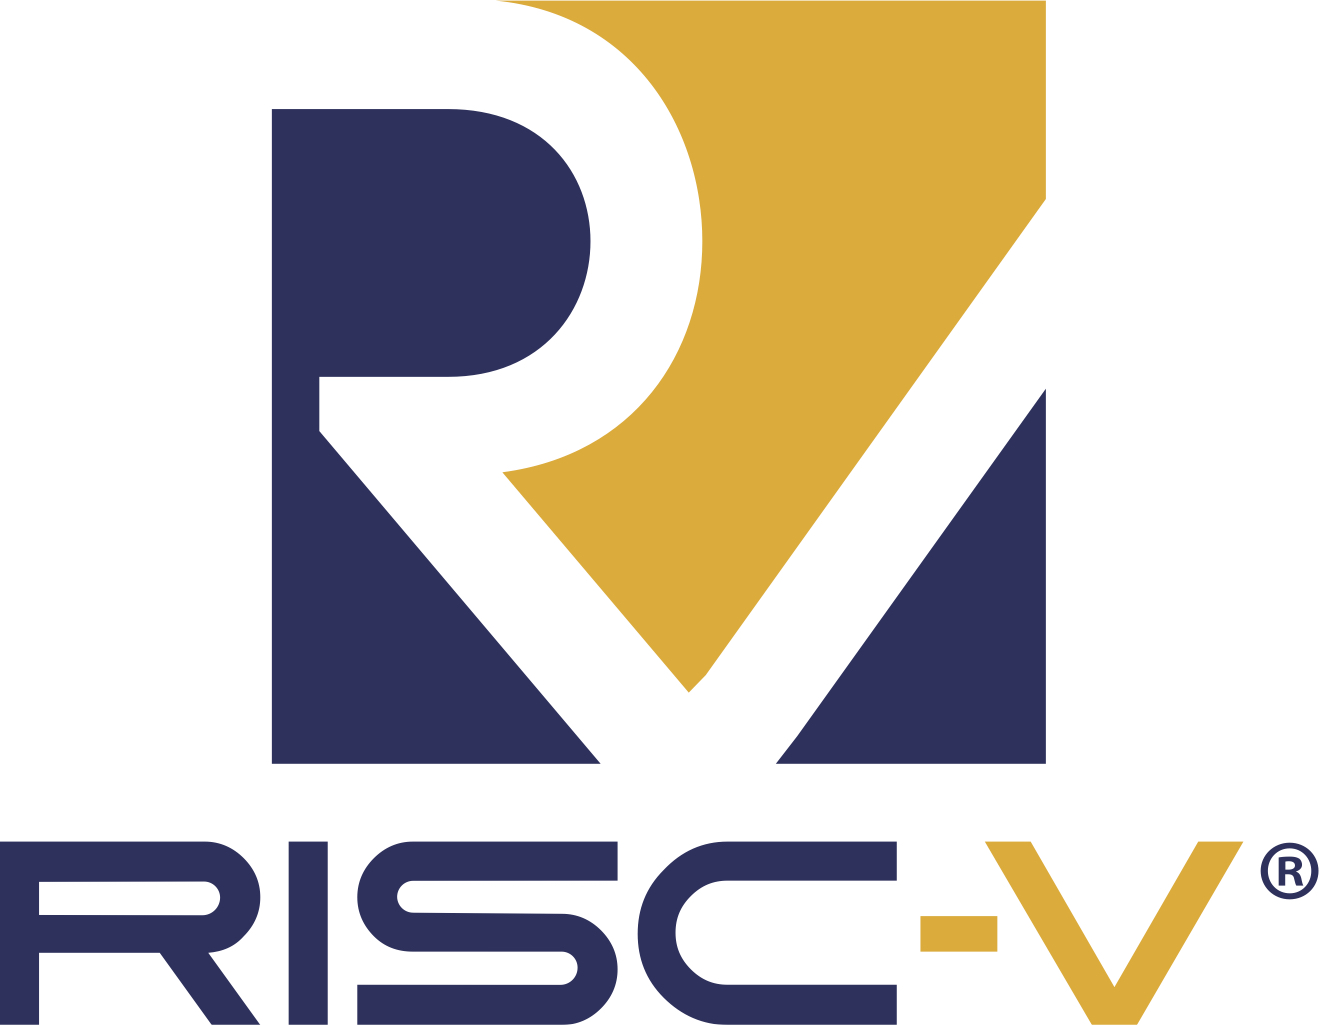 The RISC-V Foundation